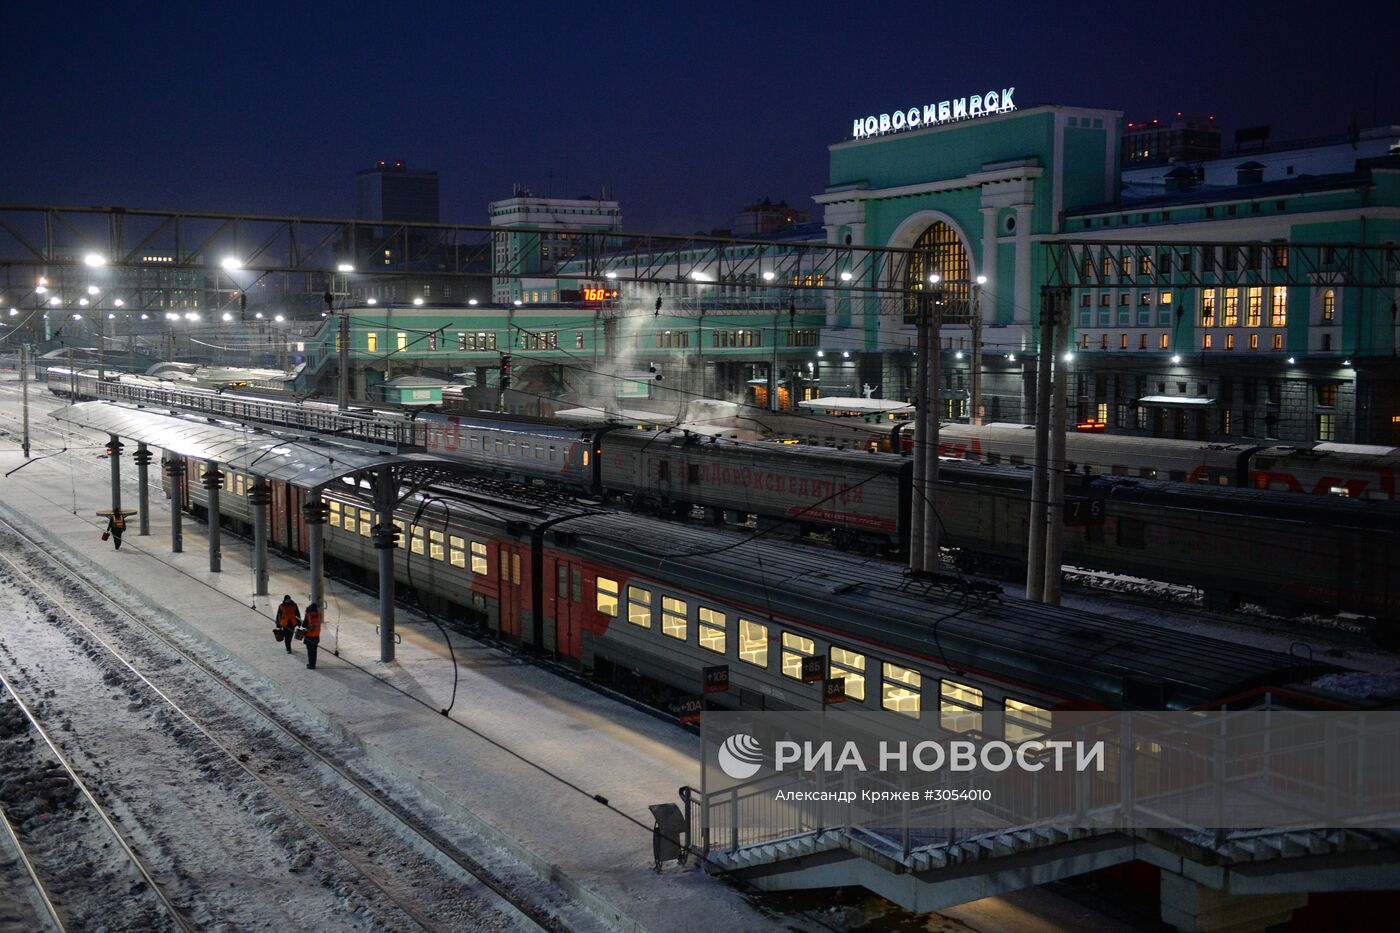 Западно-Сибирская железная дорога. 100-летие Транссибирской магистрали